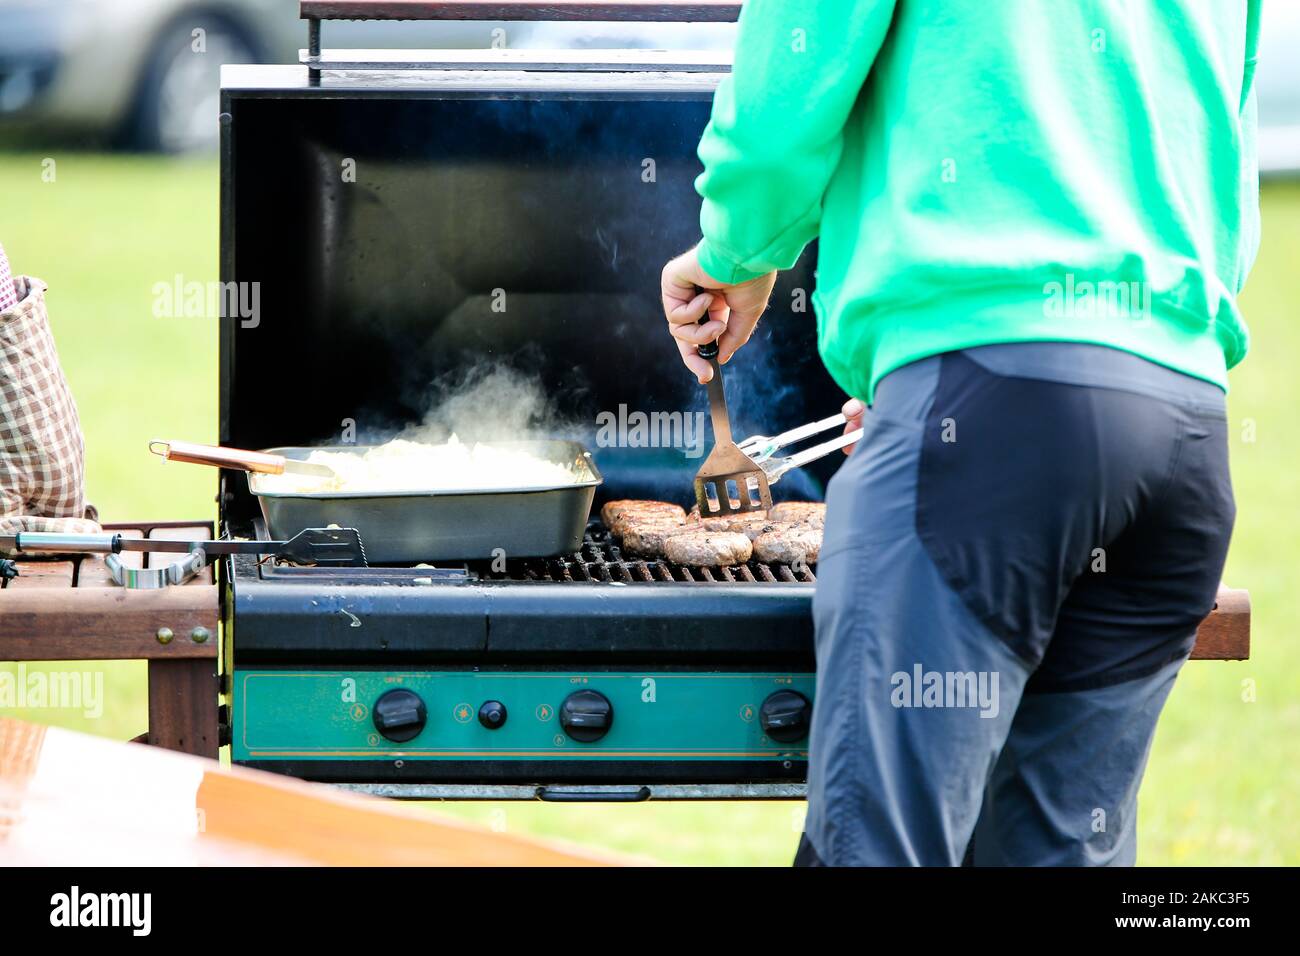 Un homme la cuisson des saucisses sur un barbecue à gaz ouvert, il y a aussi un bac d'oignons en attente d'être servi Banque D'Images